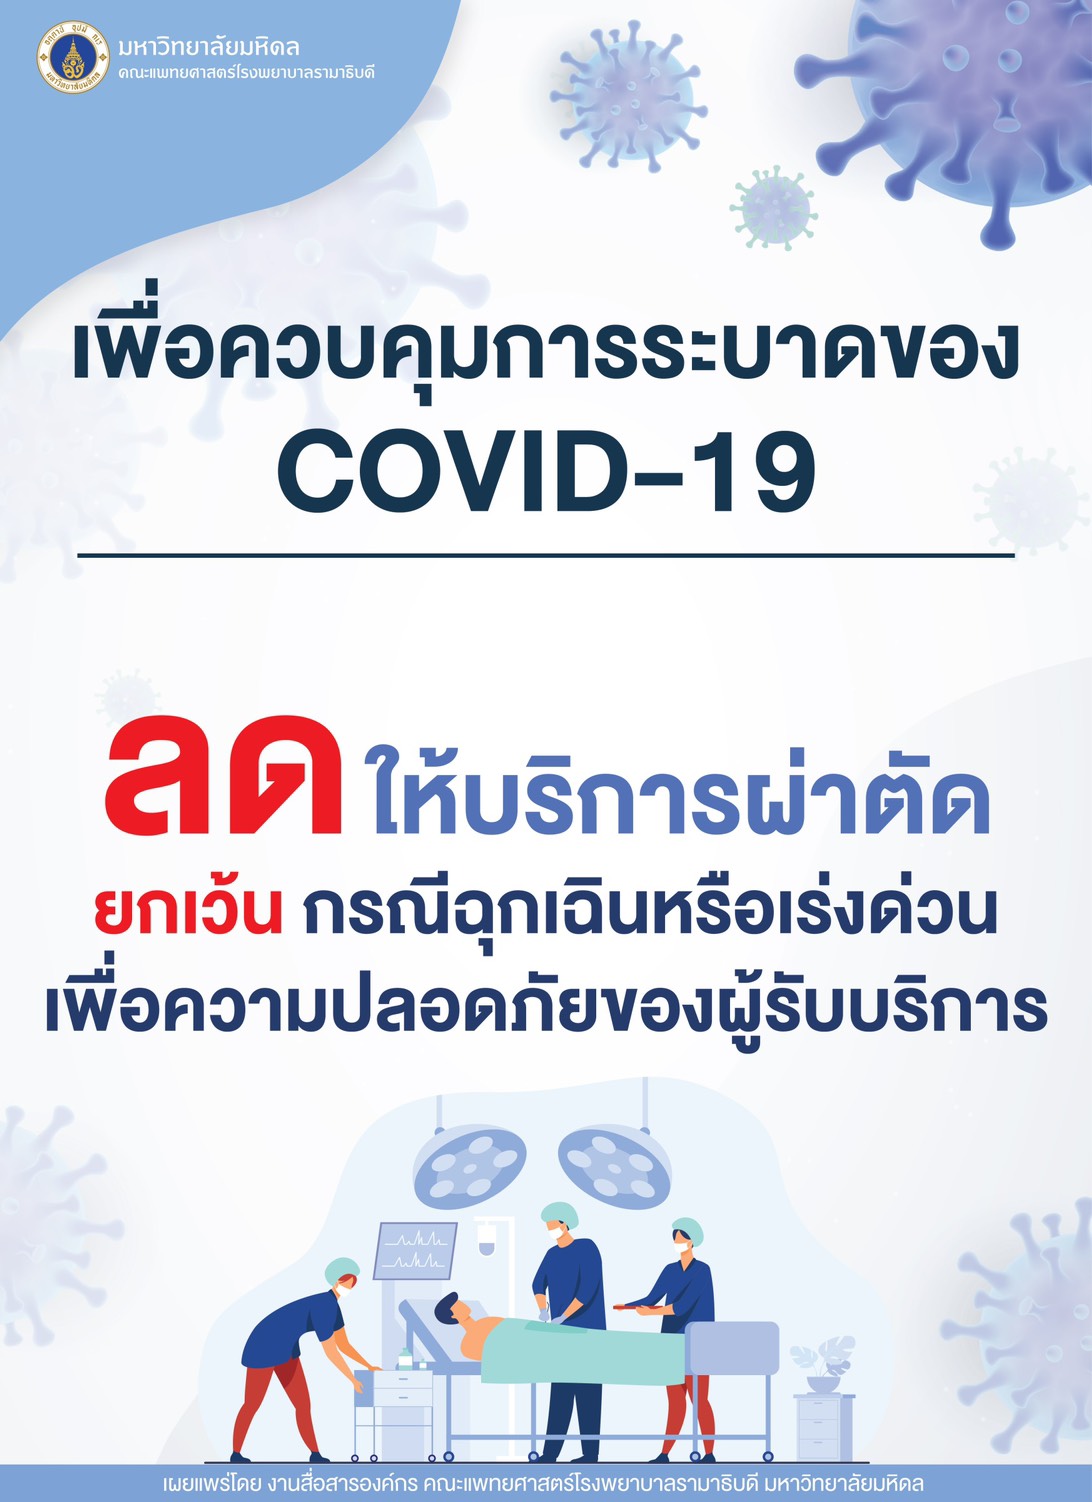 เพื่อควบคุมการระบาดของ COVID-19 ลดให้บริการผ่าตัด ยกเว้น กรณีฉุกเฉินหรือเร่งด่วน